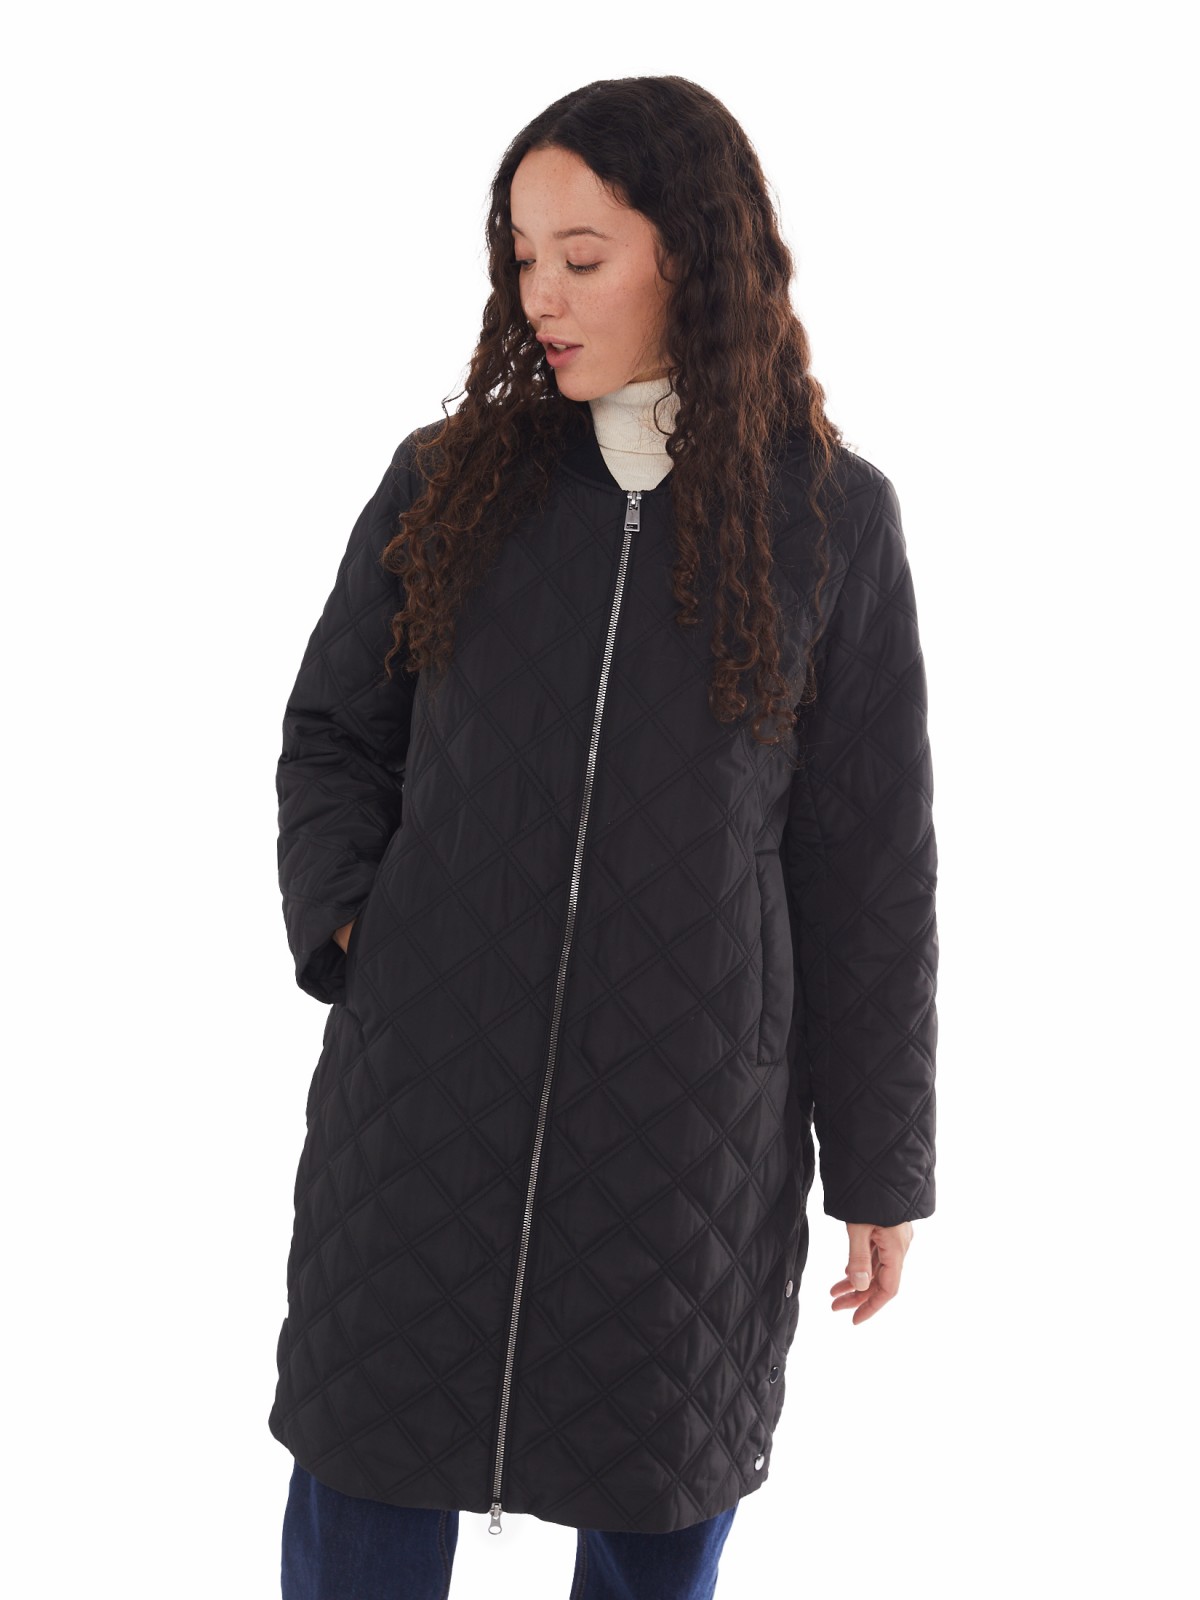 Утеплённое стёганое пальто-бомбер на синтепоне zolla 024125250044, цвет черный, размер XS - фото 3